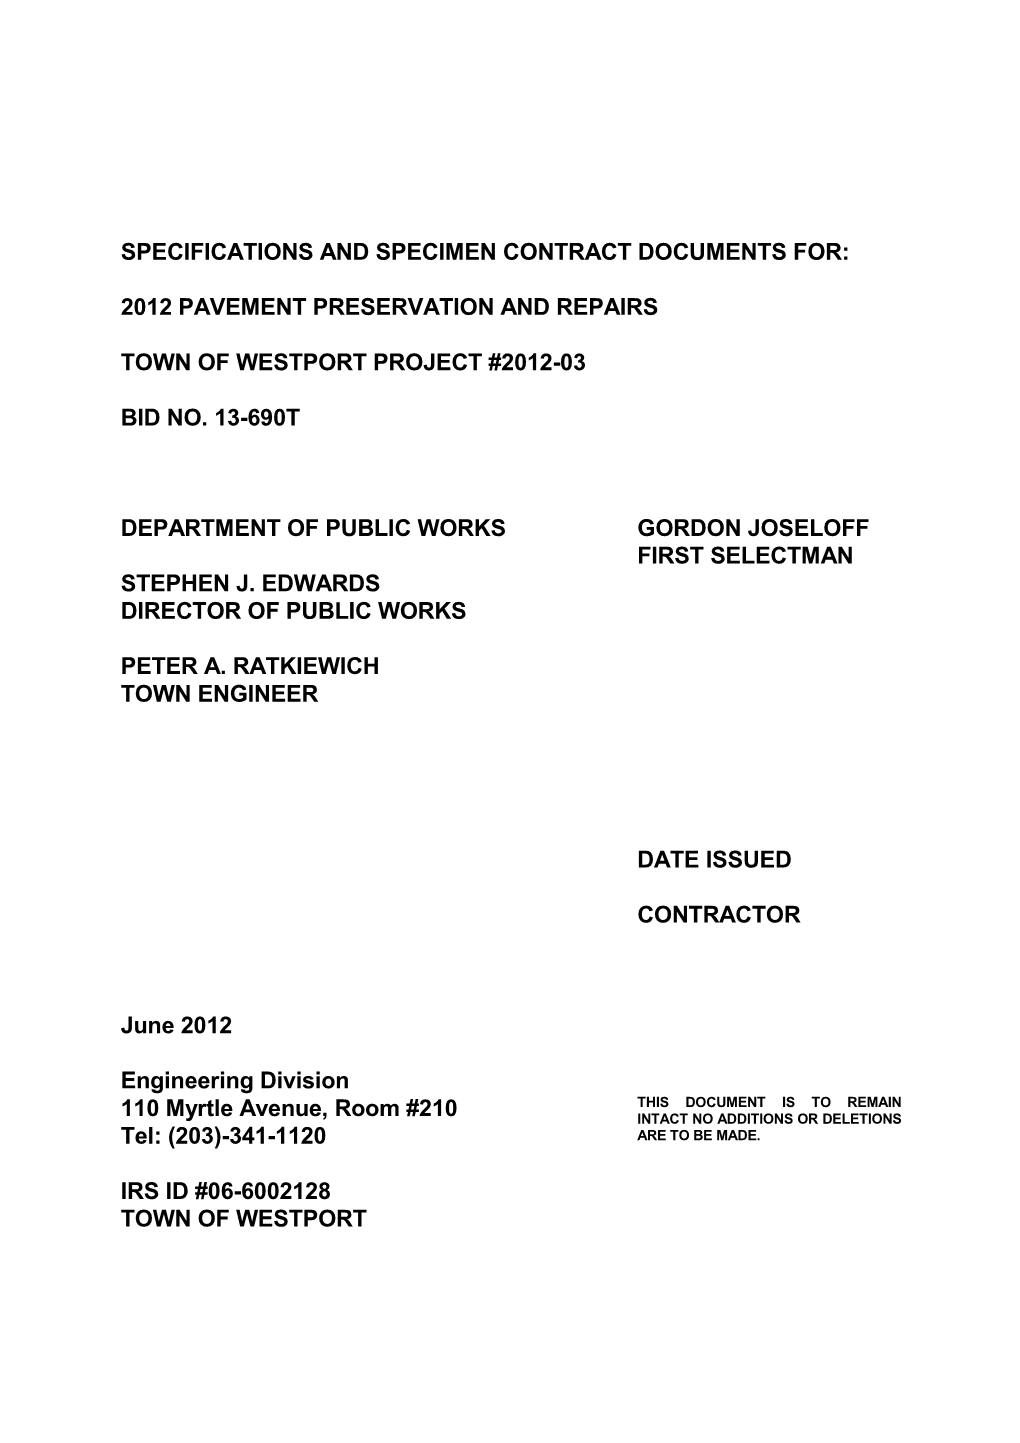 Bid Documents; Paving Project; Bid 13-690T